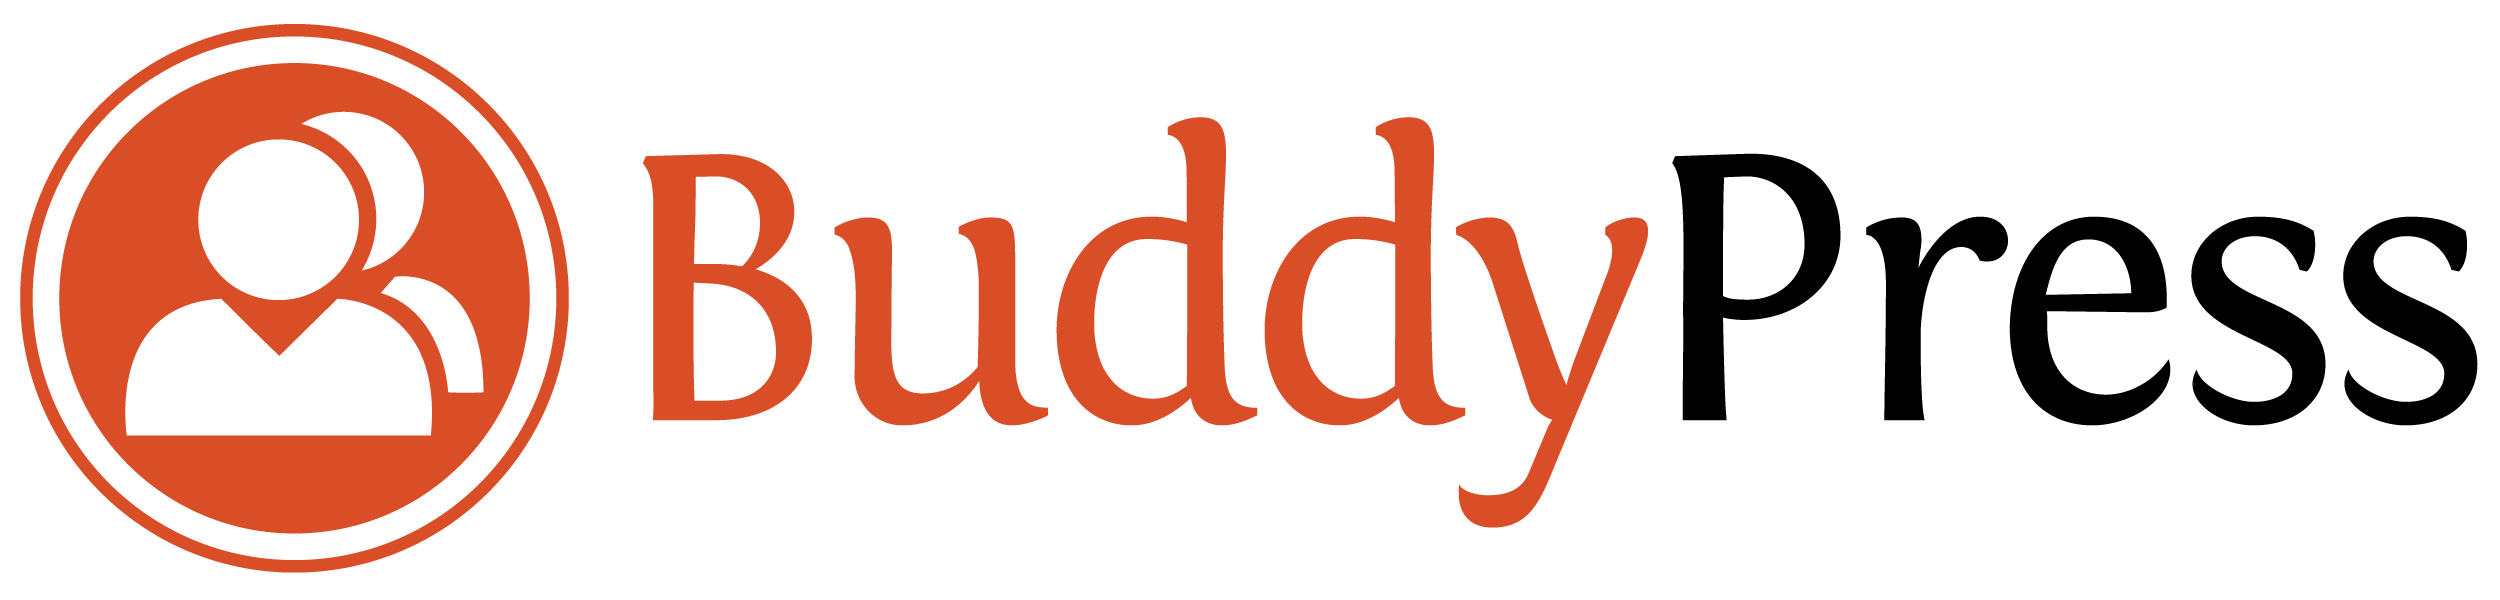 thunder-bay-buddypress